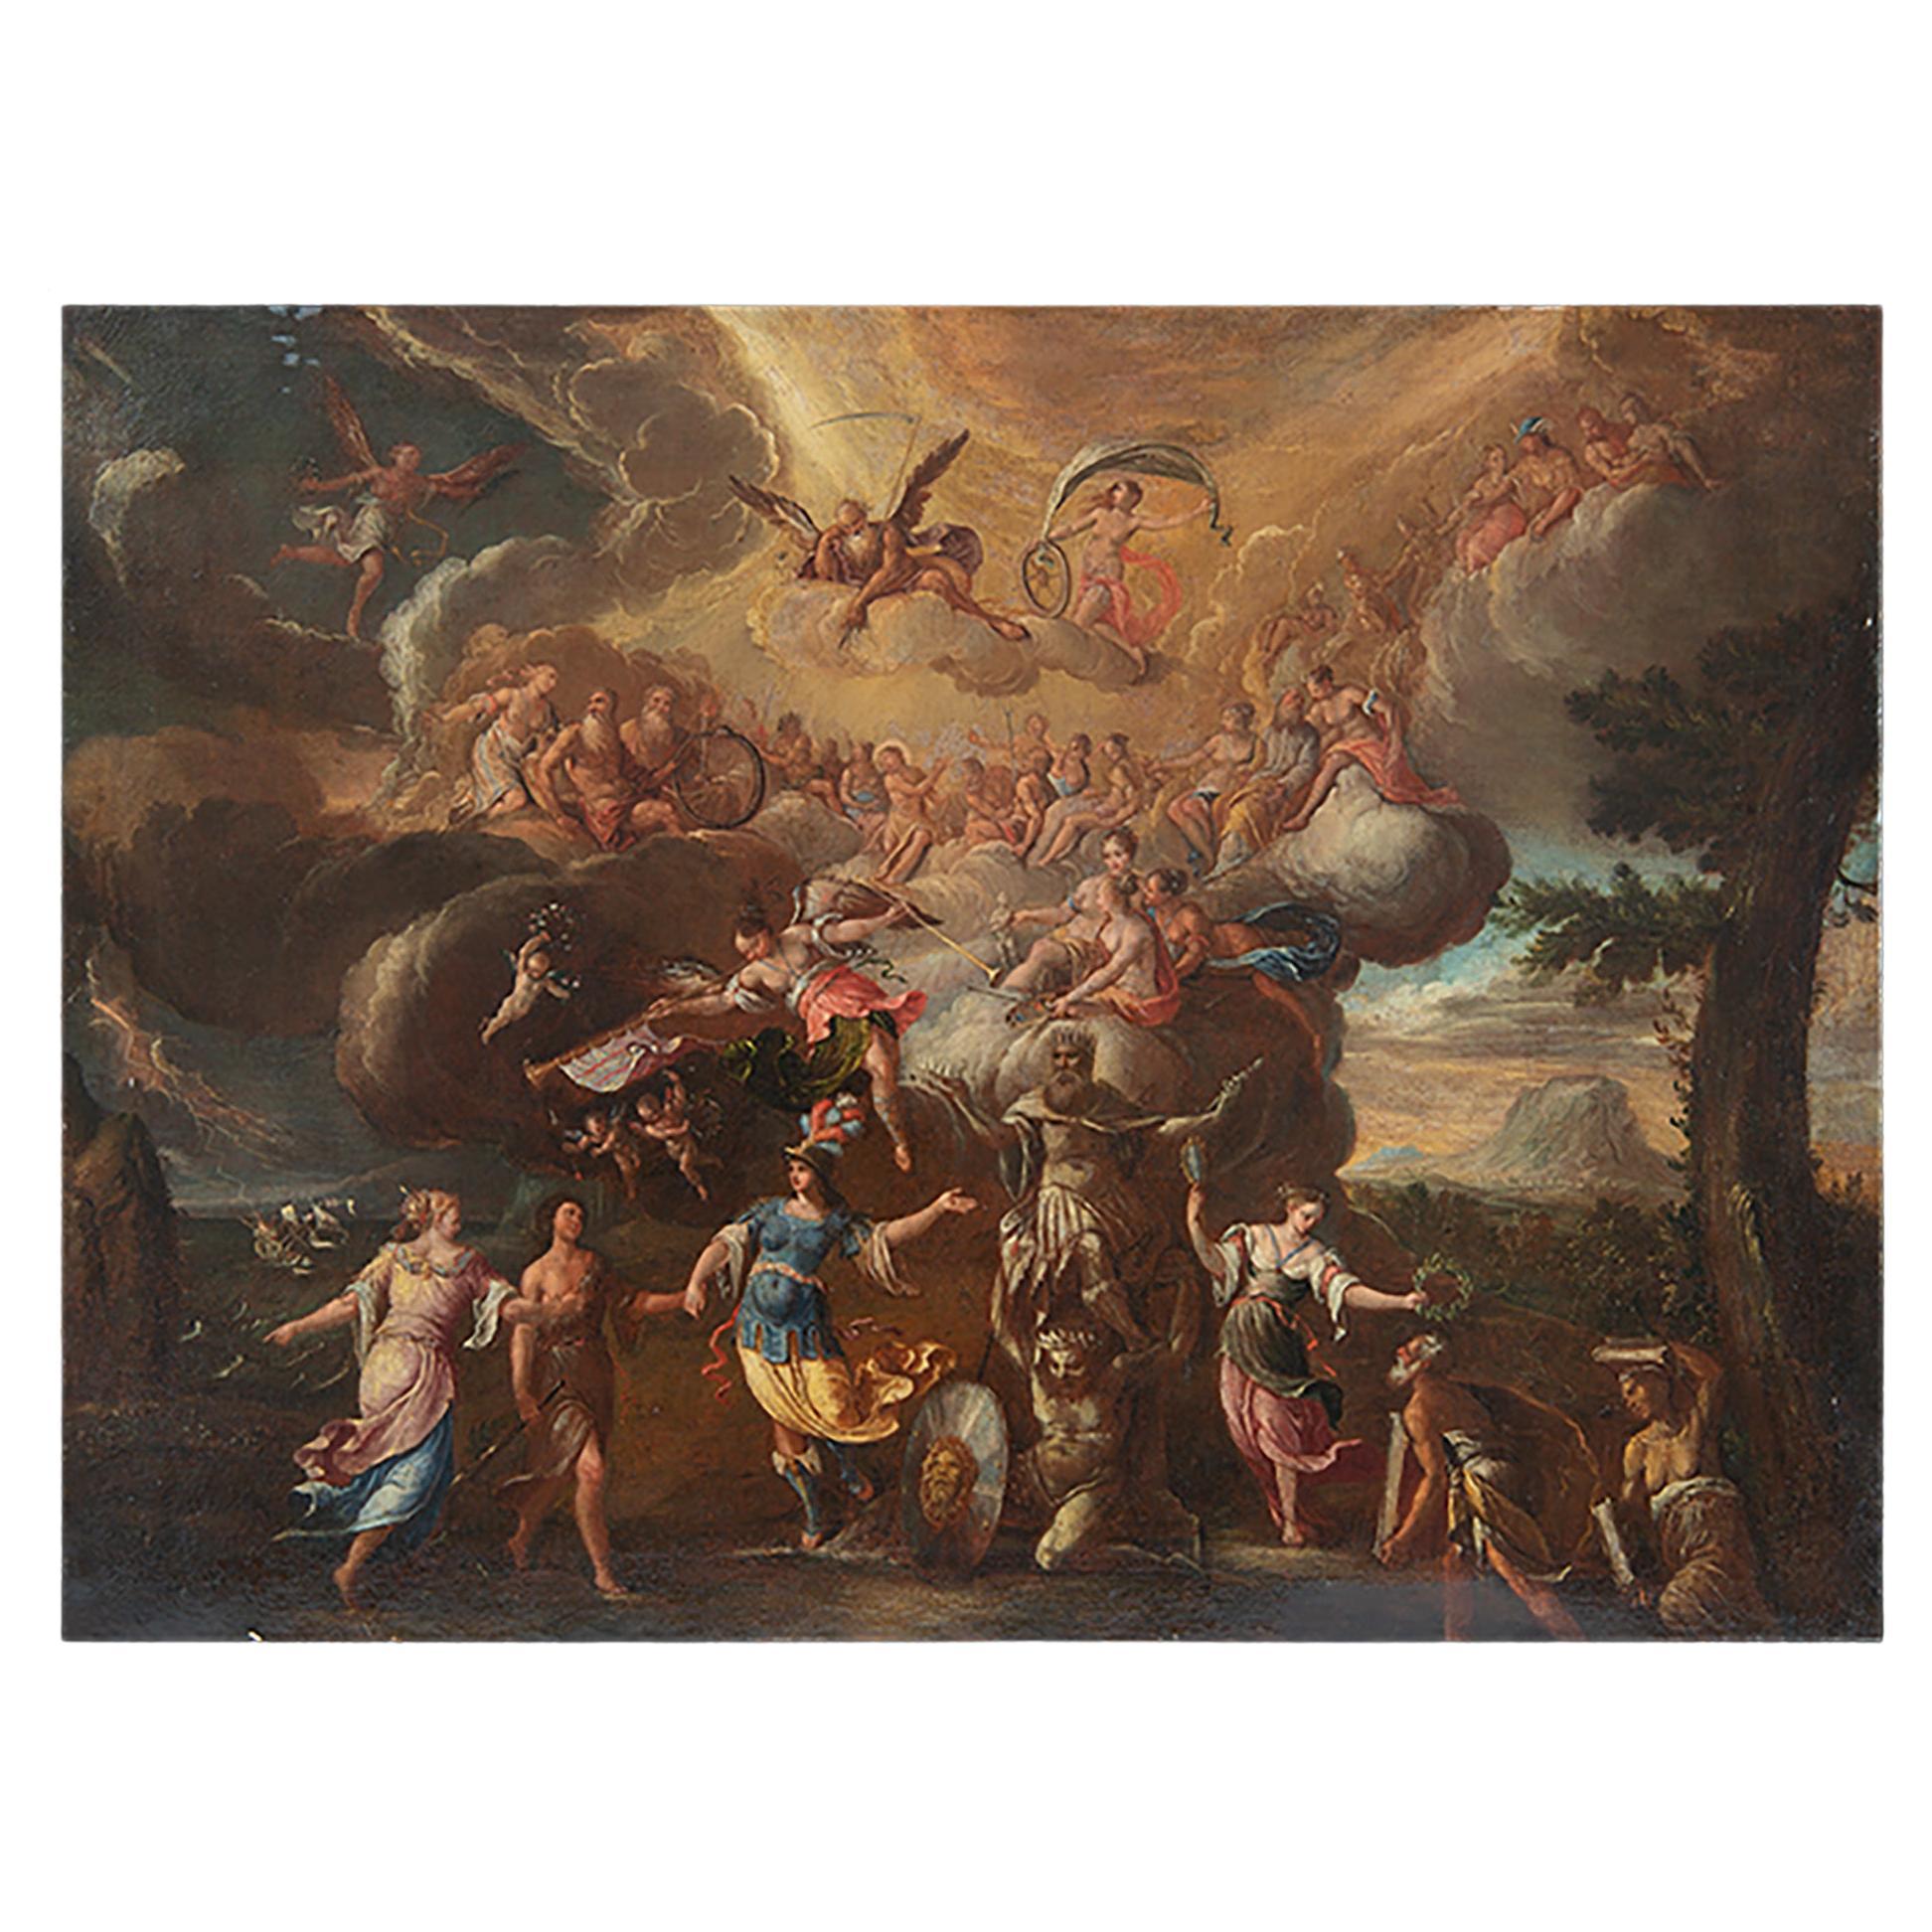 Antikes lgemlde auf Leinwand, mythologische Szene, 17. Jahrhundert